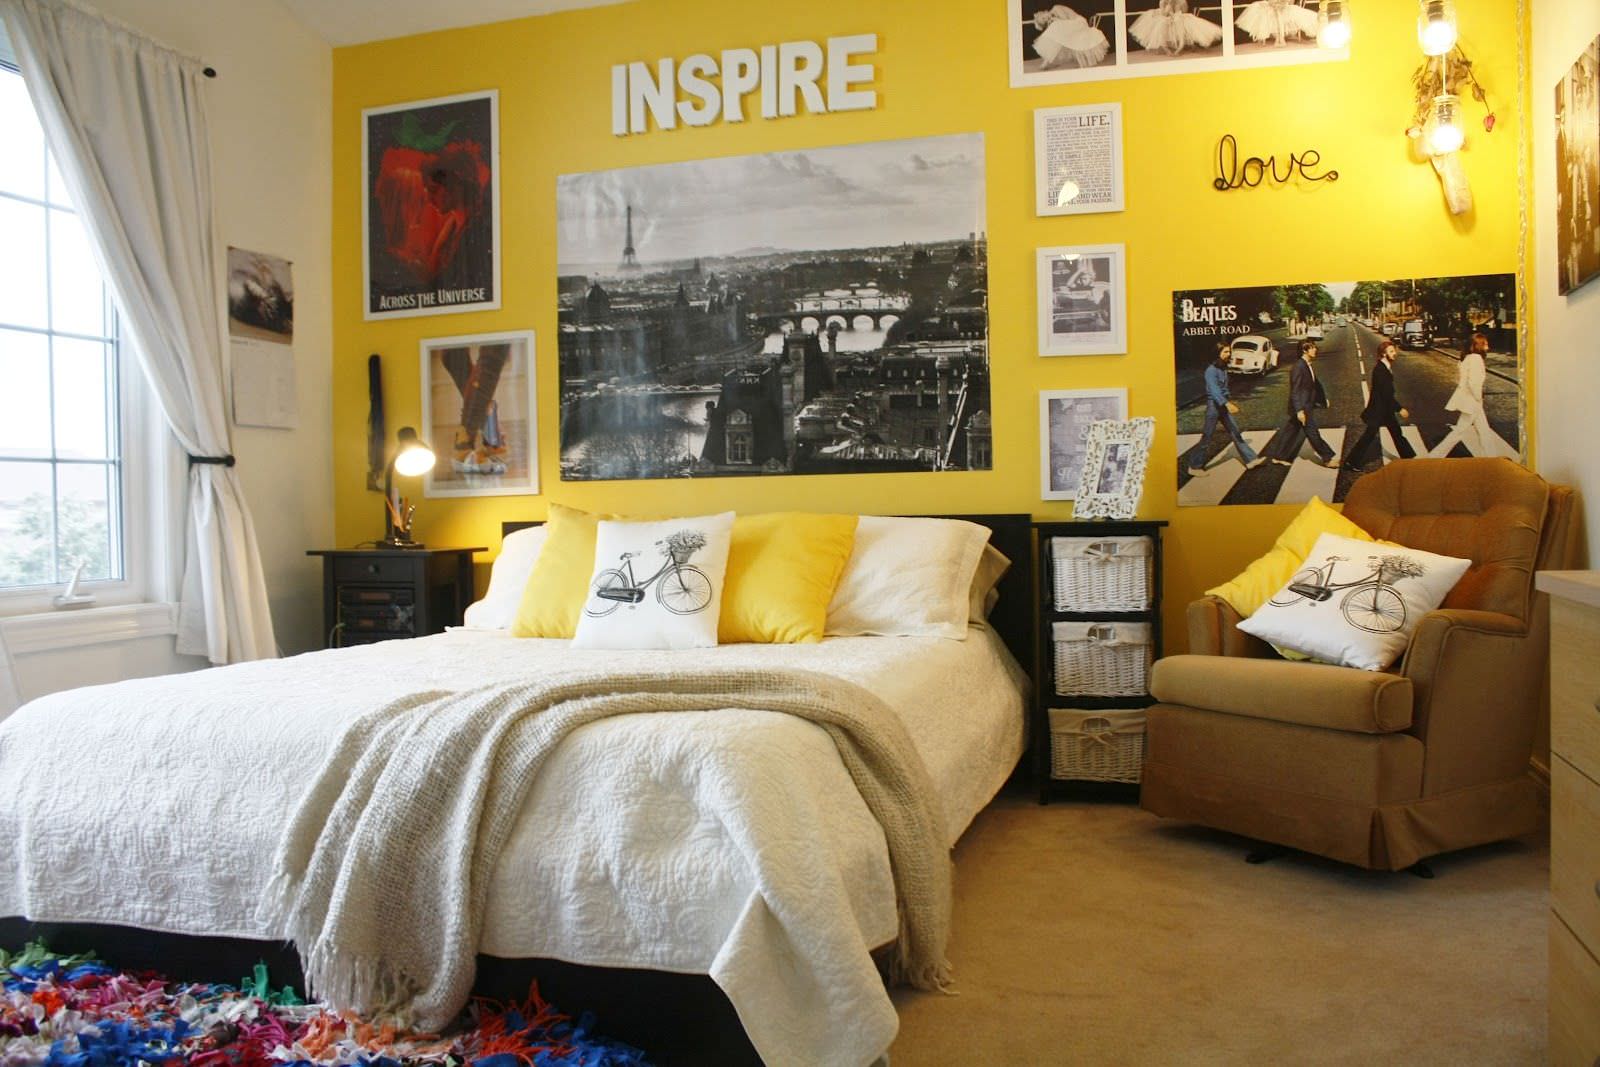 Trang trí phòng ngủ bằng ảnh giấy dán tường đơn giản mà lạ mắt